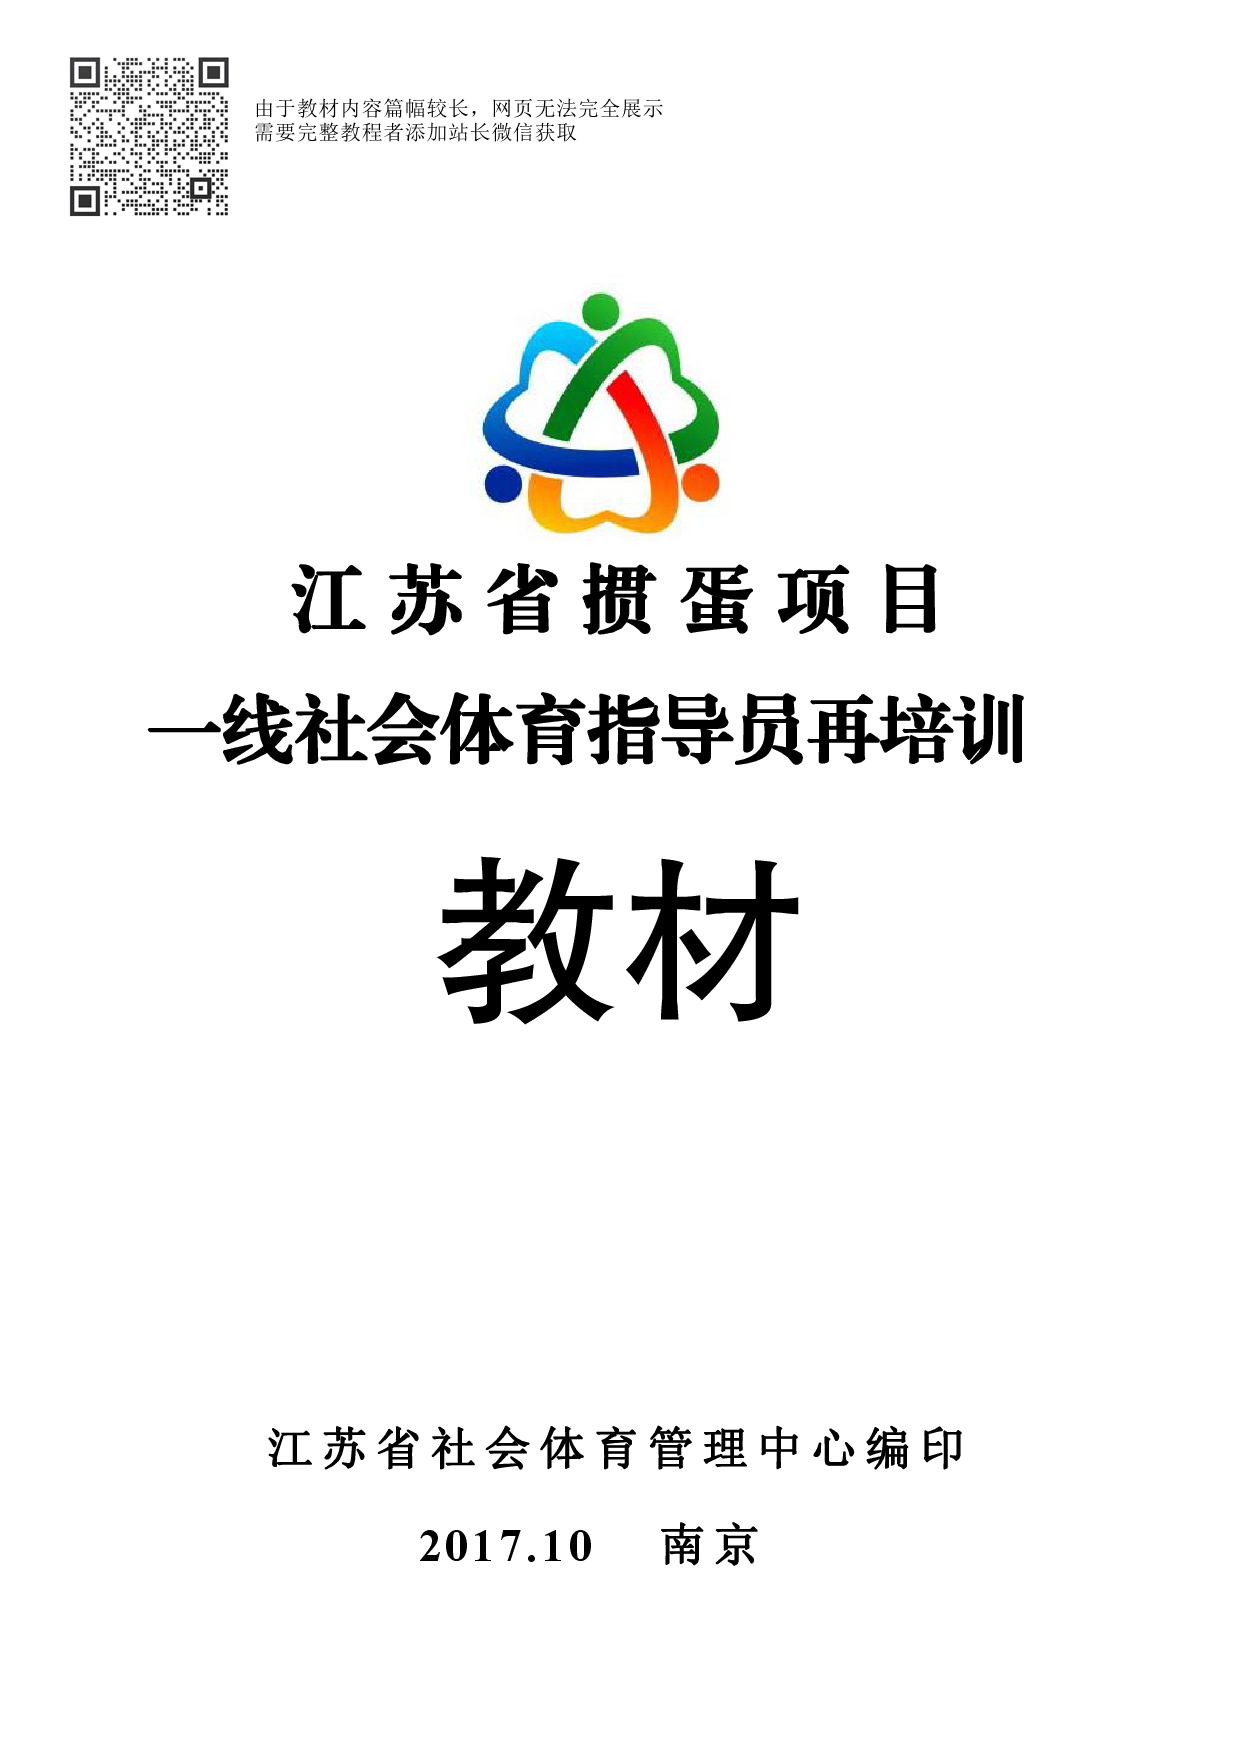 江苏省掼蛋项目一线社会体育指导员再培训教材